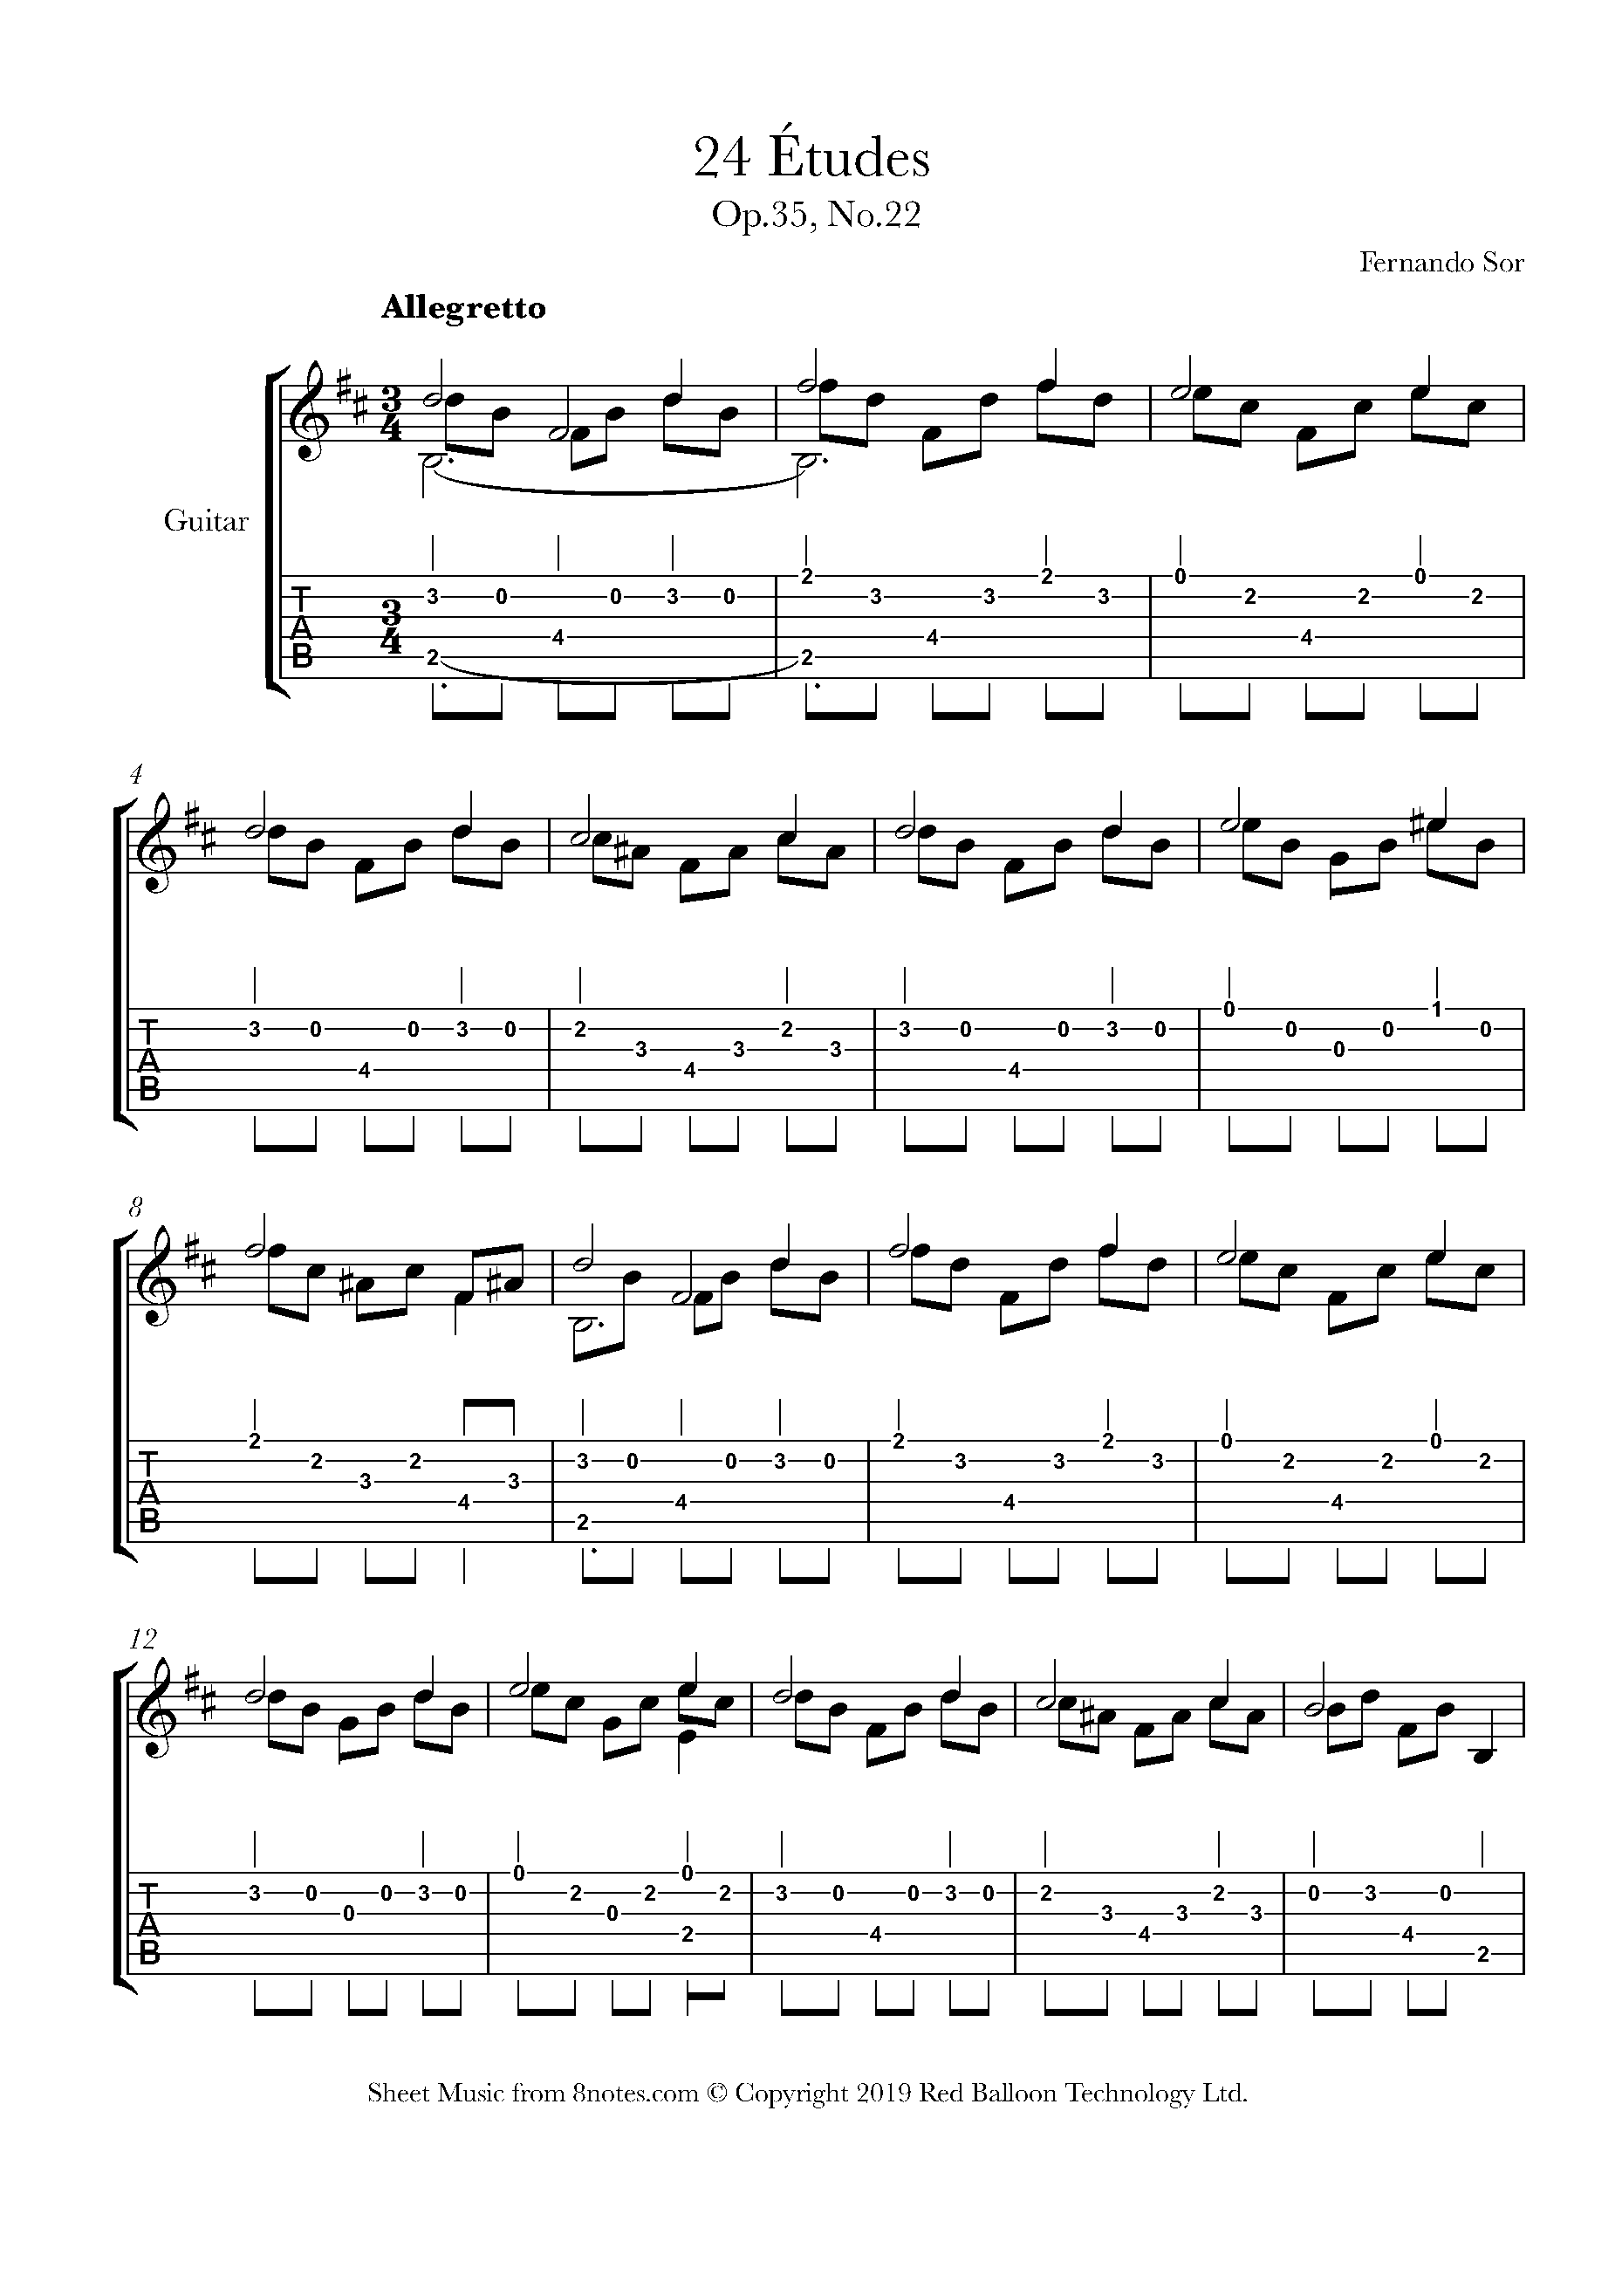 free-printable-guitar-sheet-music